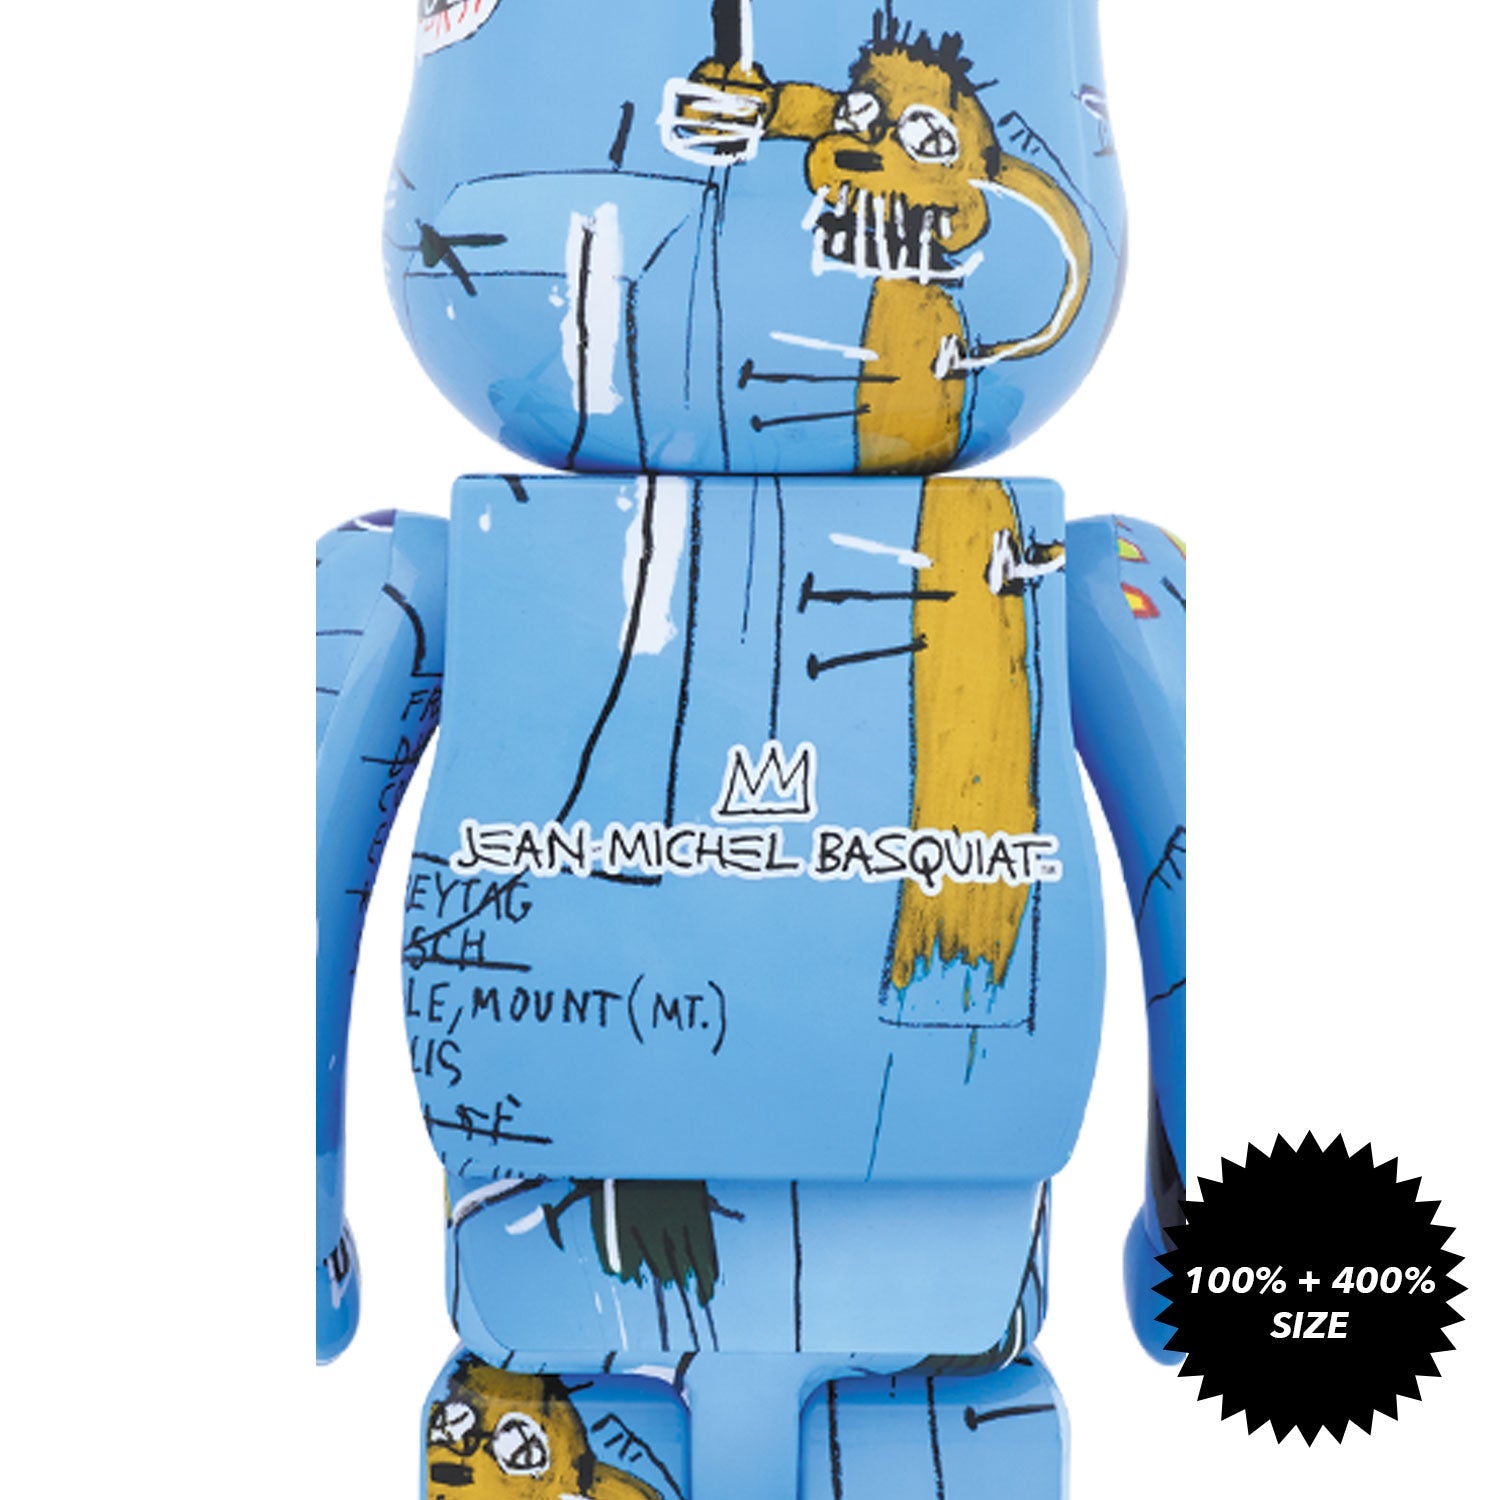 Jean-Michel Basquiat #4 100% + 400% Bearbrick Set by Medicom Toy